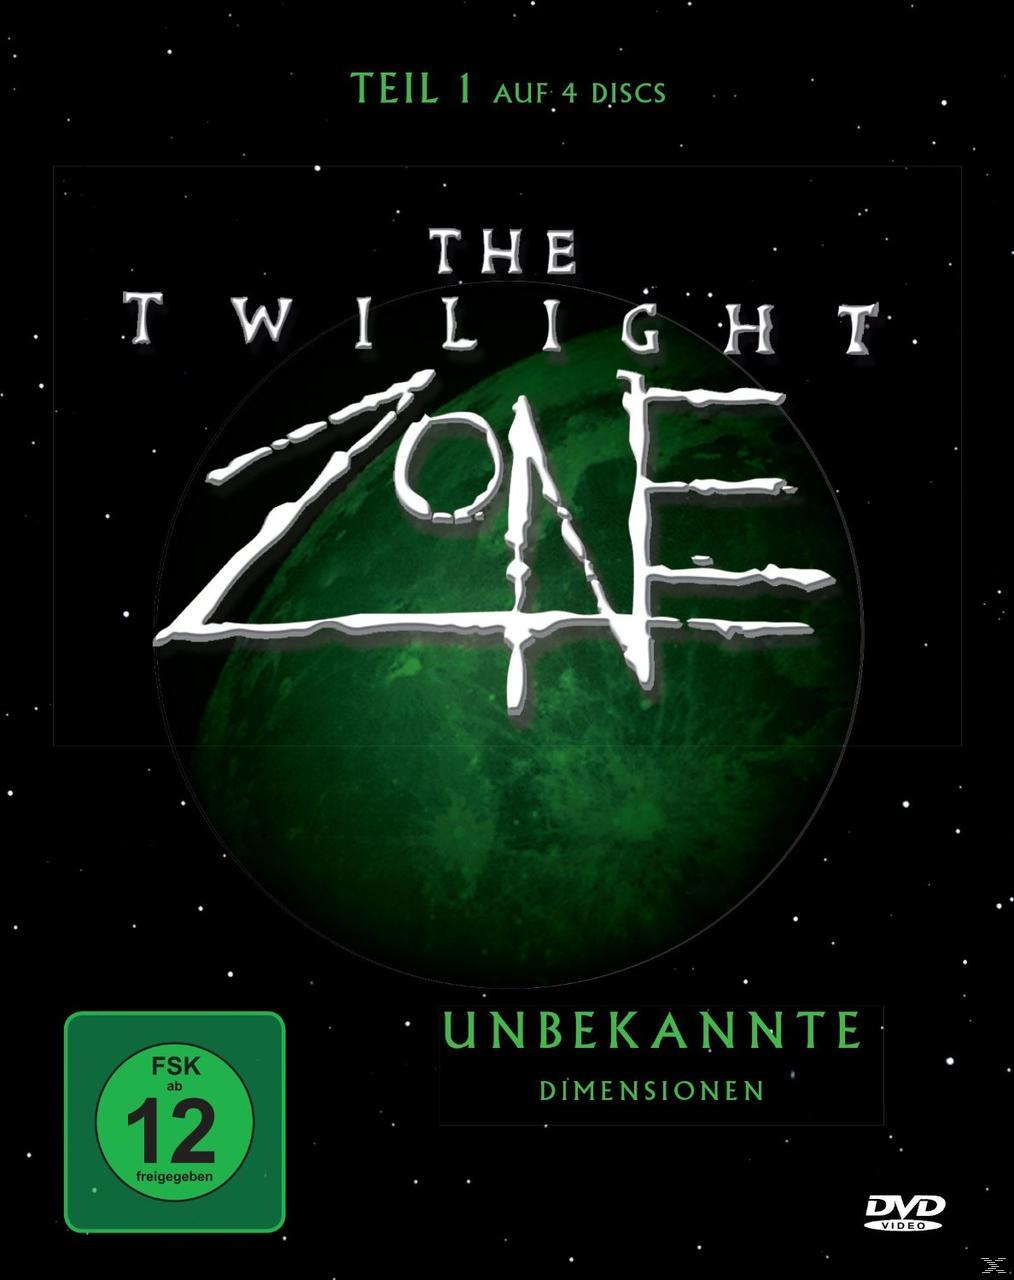 The Twilight Zone 1 Unbekannte DVD Dimensionen 